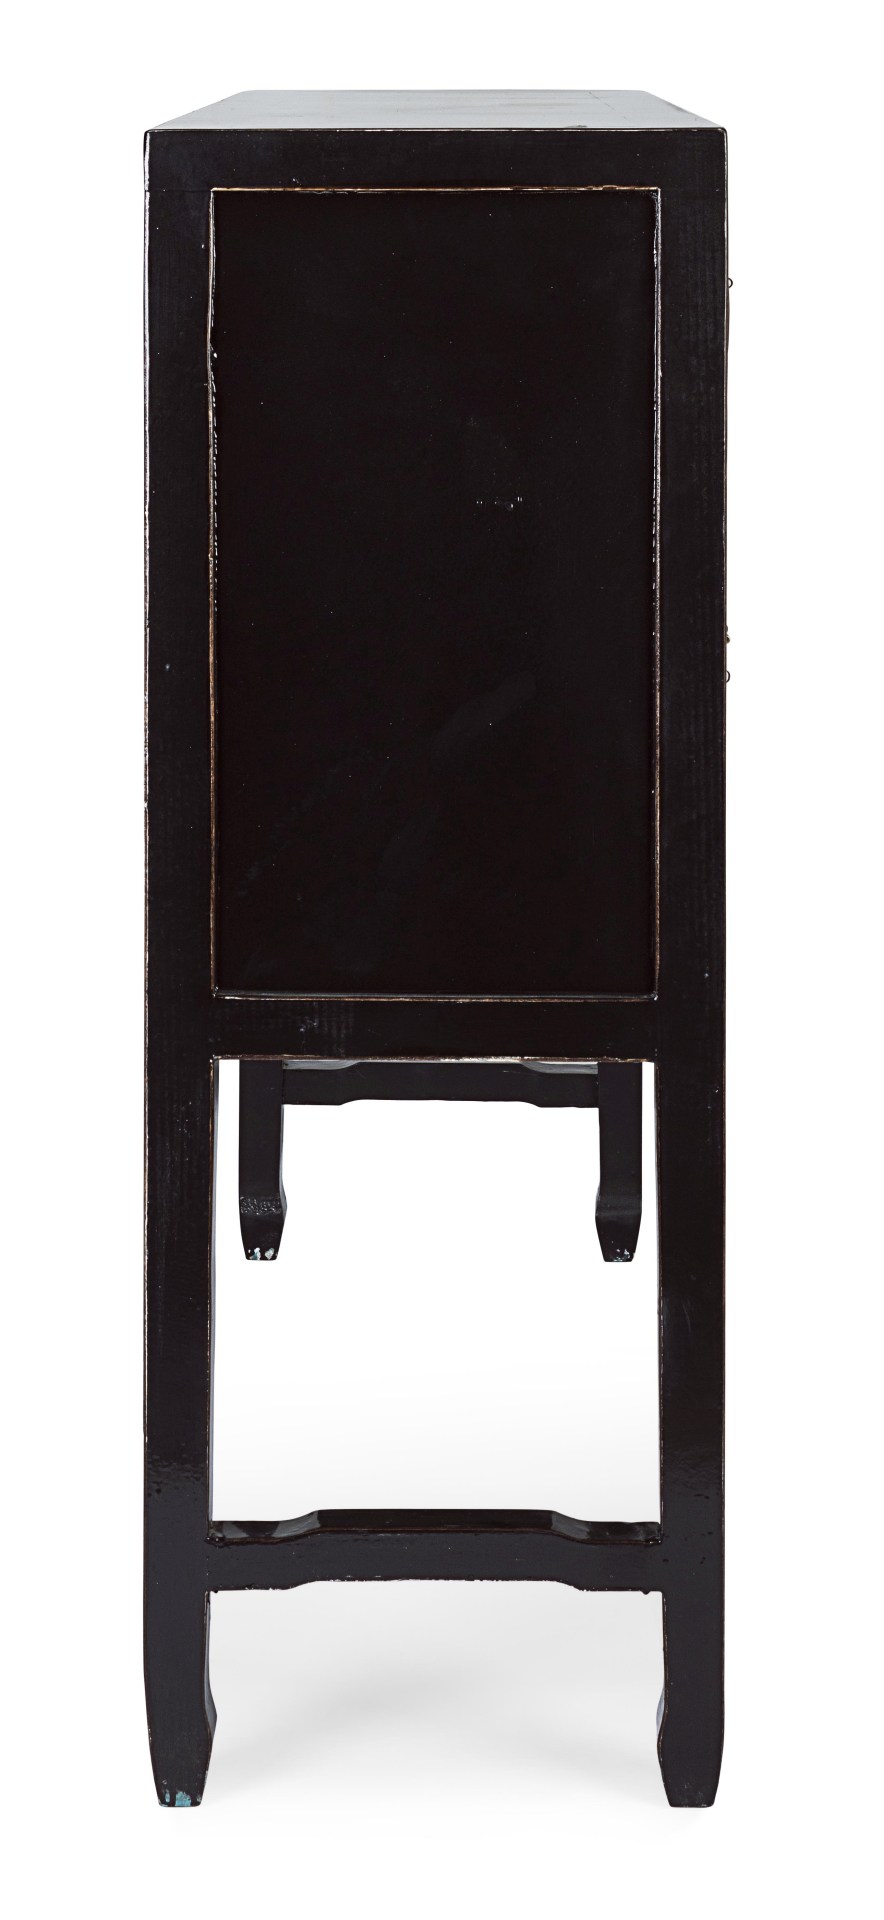 Die Konsole Jinan überzeugt mit ihrem klassischen Design. Gefertigt wurde sie aus Ulmenholz, welches einen schwarzen Farbton besitzt. Das Gestell ist auch aus Ulmenholz. Die Konsole verfügt über vier Türen und fünf Schubladen. Die Breite beträgt 137 cm.